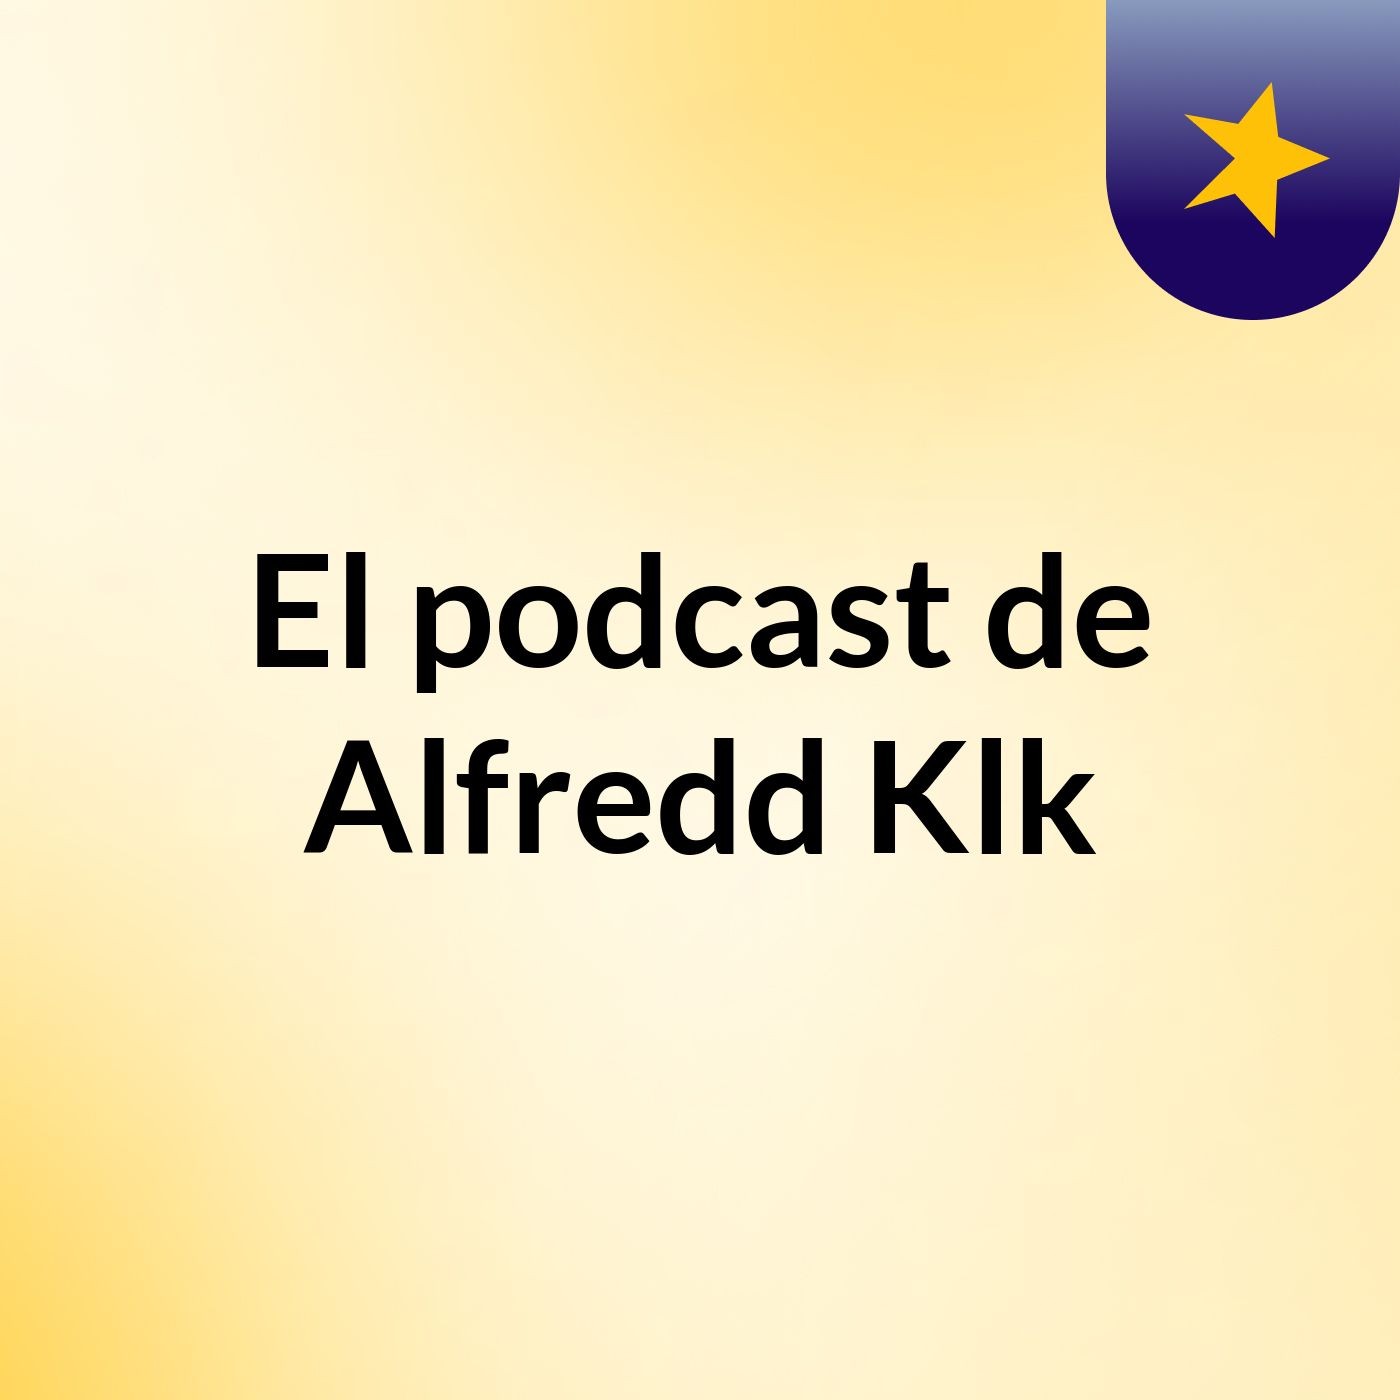 El podcast de Alfredd Klk